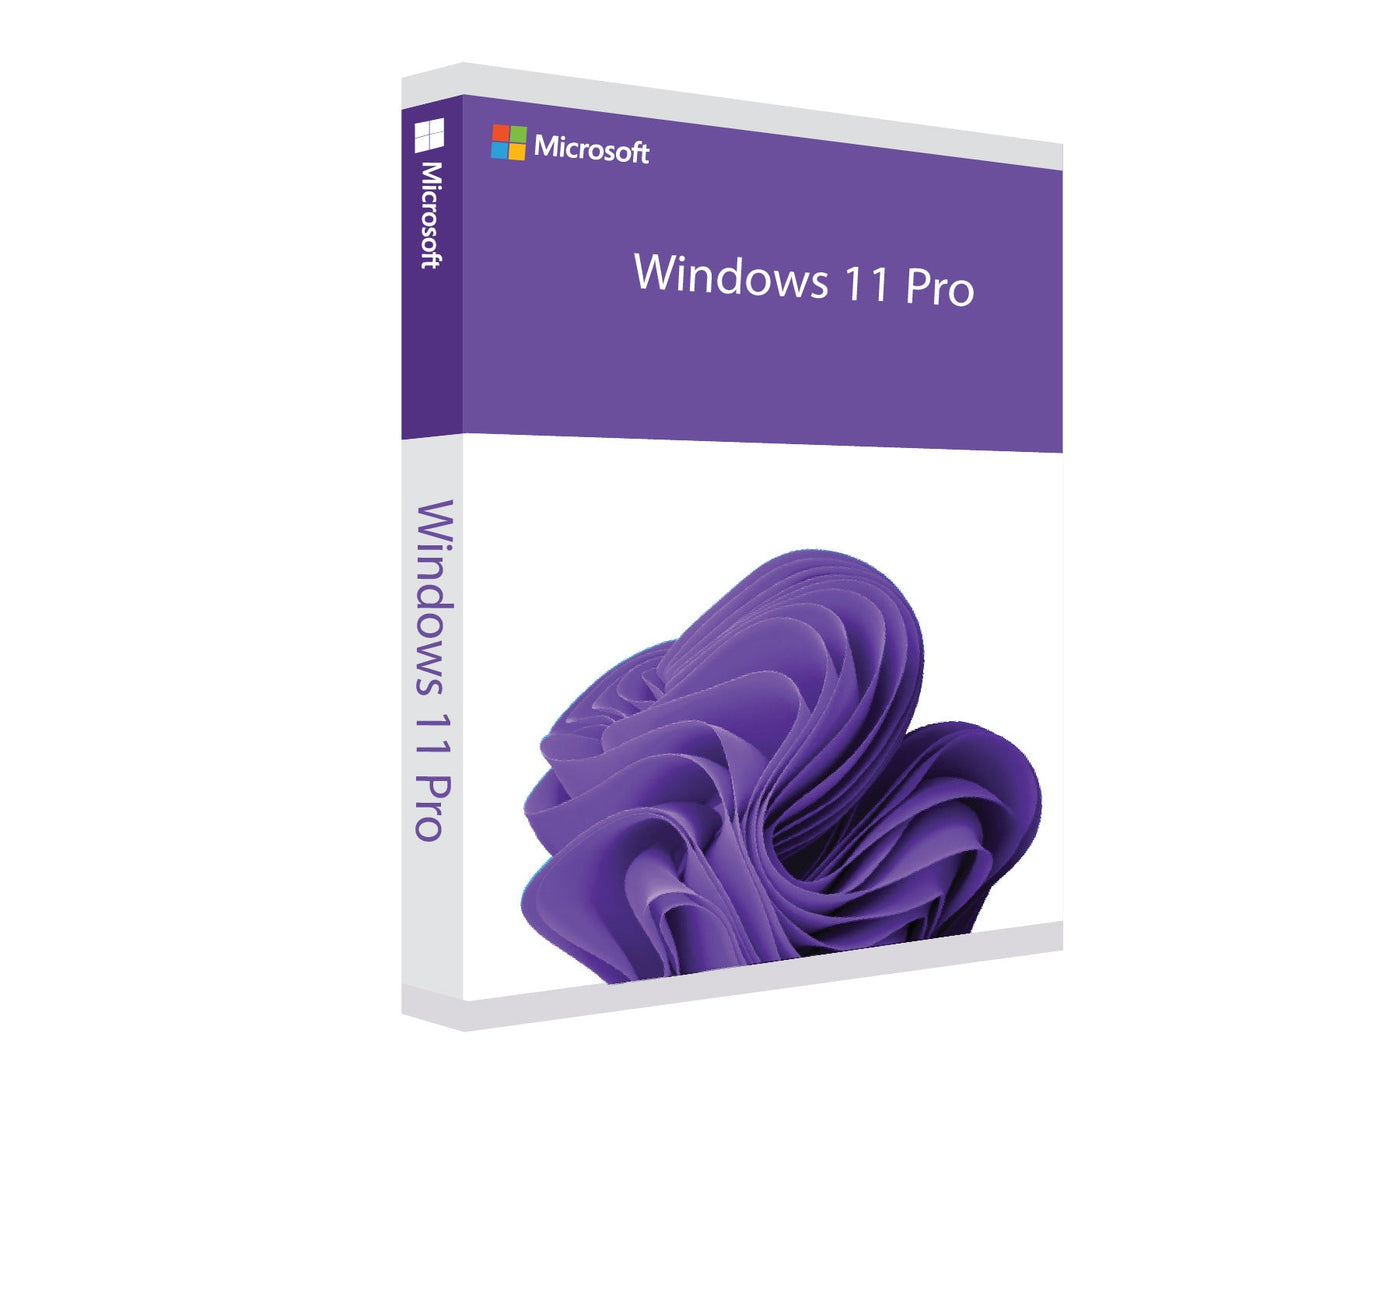 Windows 11 Pro EN